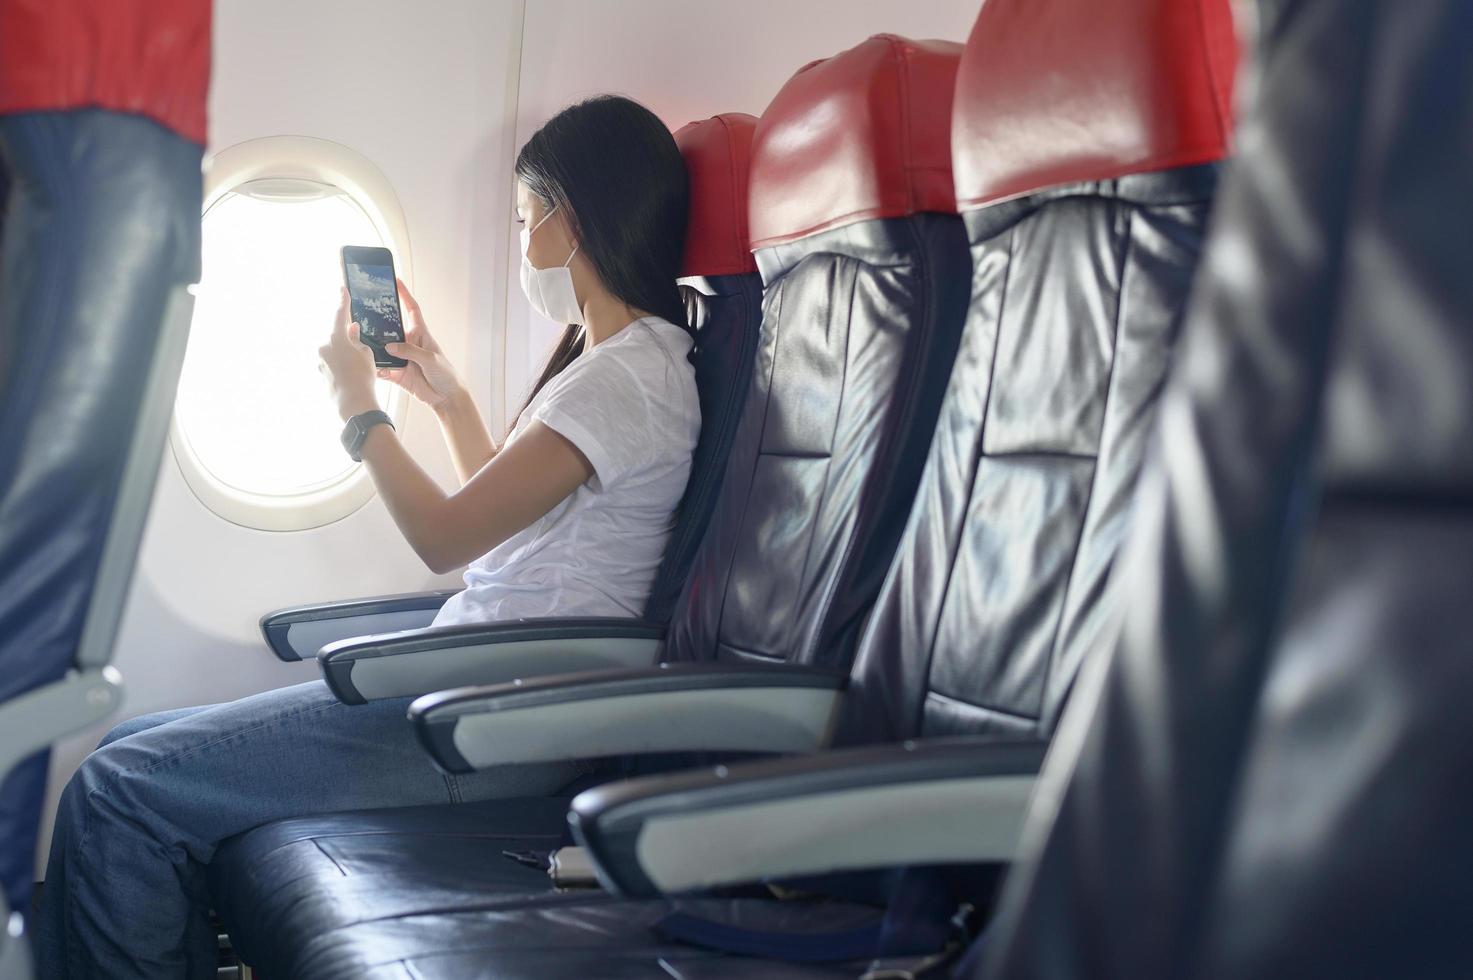 femme voyageuse portant un masque de protection à bord de l'avion à l'aide d'un smartphone, voyage sous la pandémie de covid-19, voyages de sécurité, protocole de distanciation sociale, nouveau concept de voyage normal photo